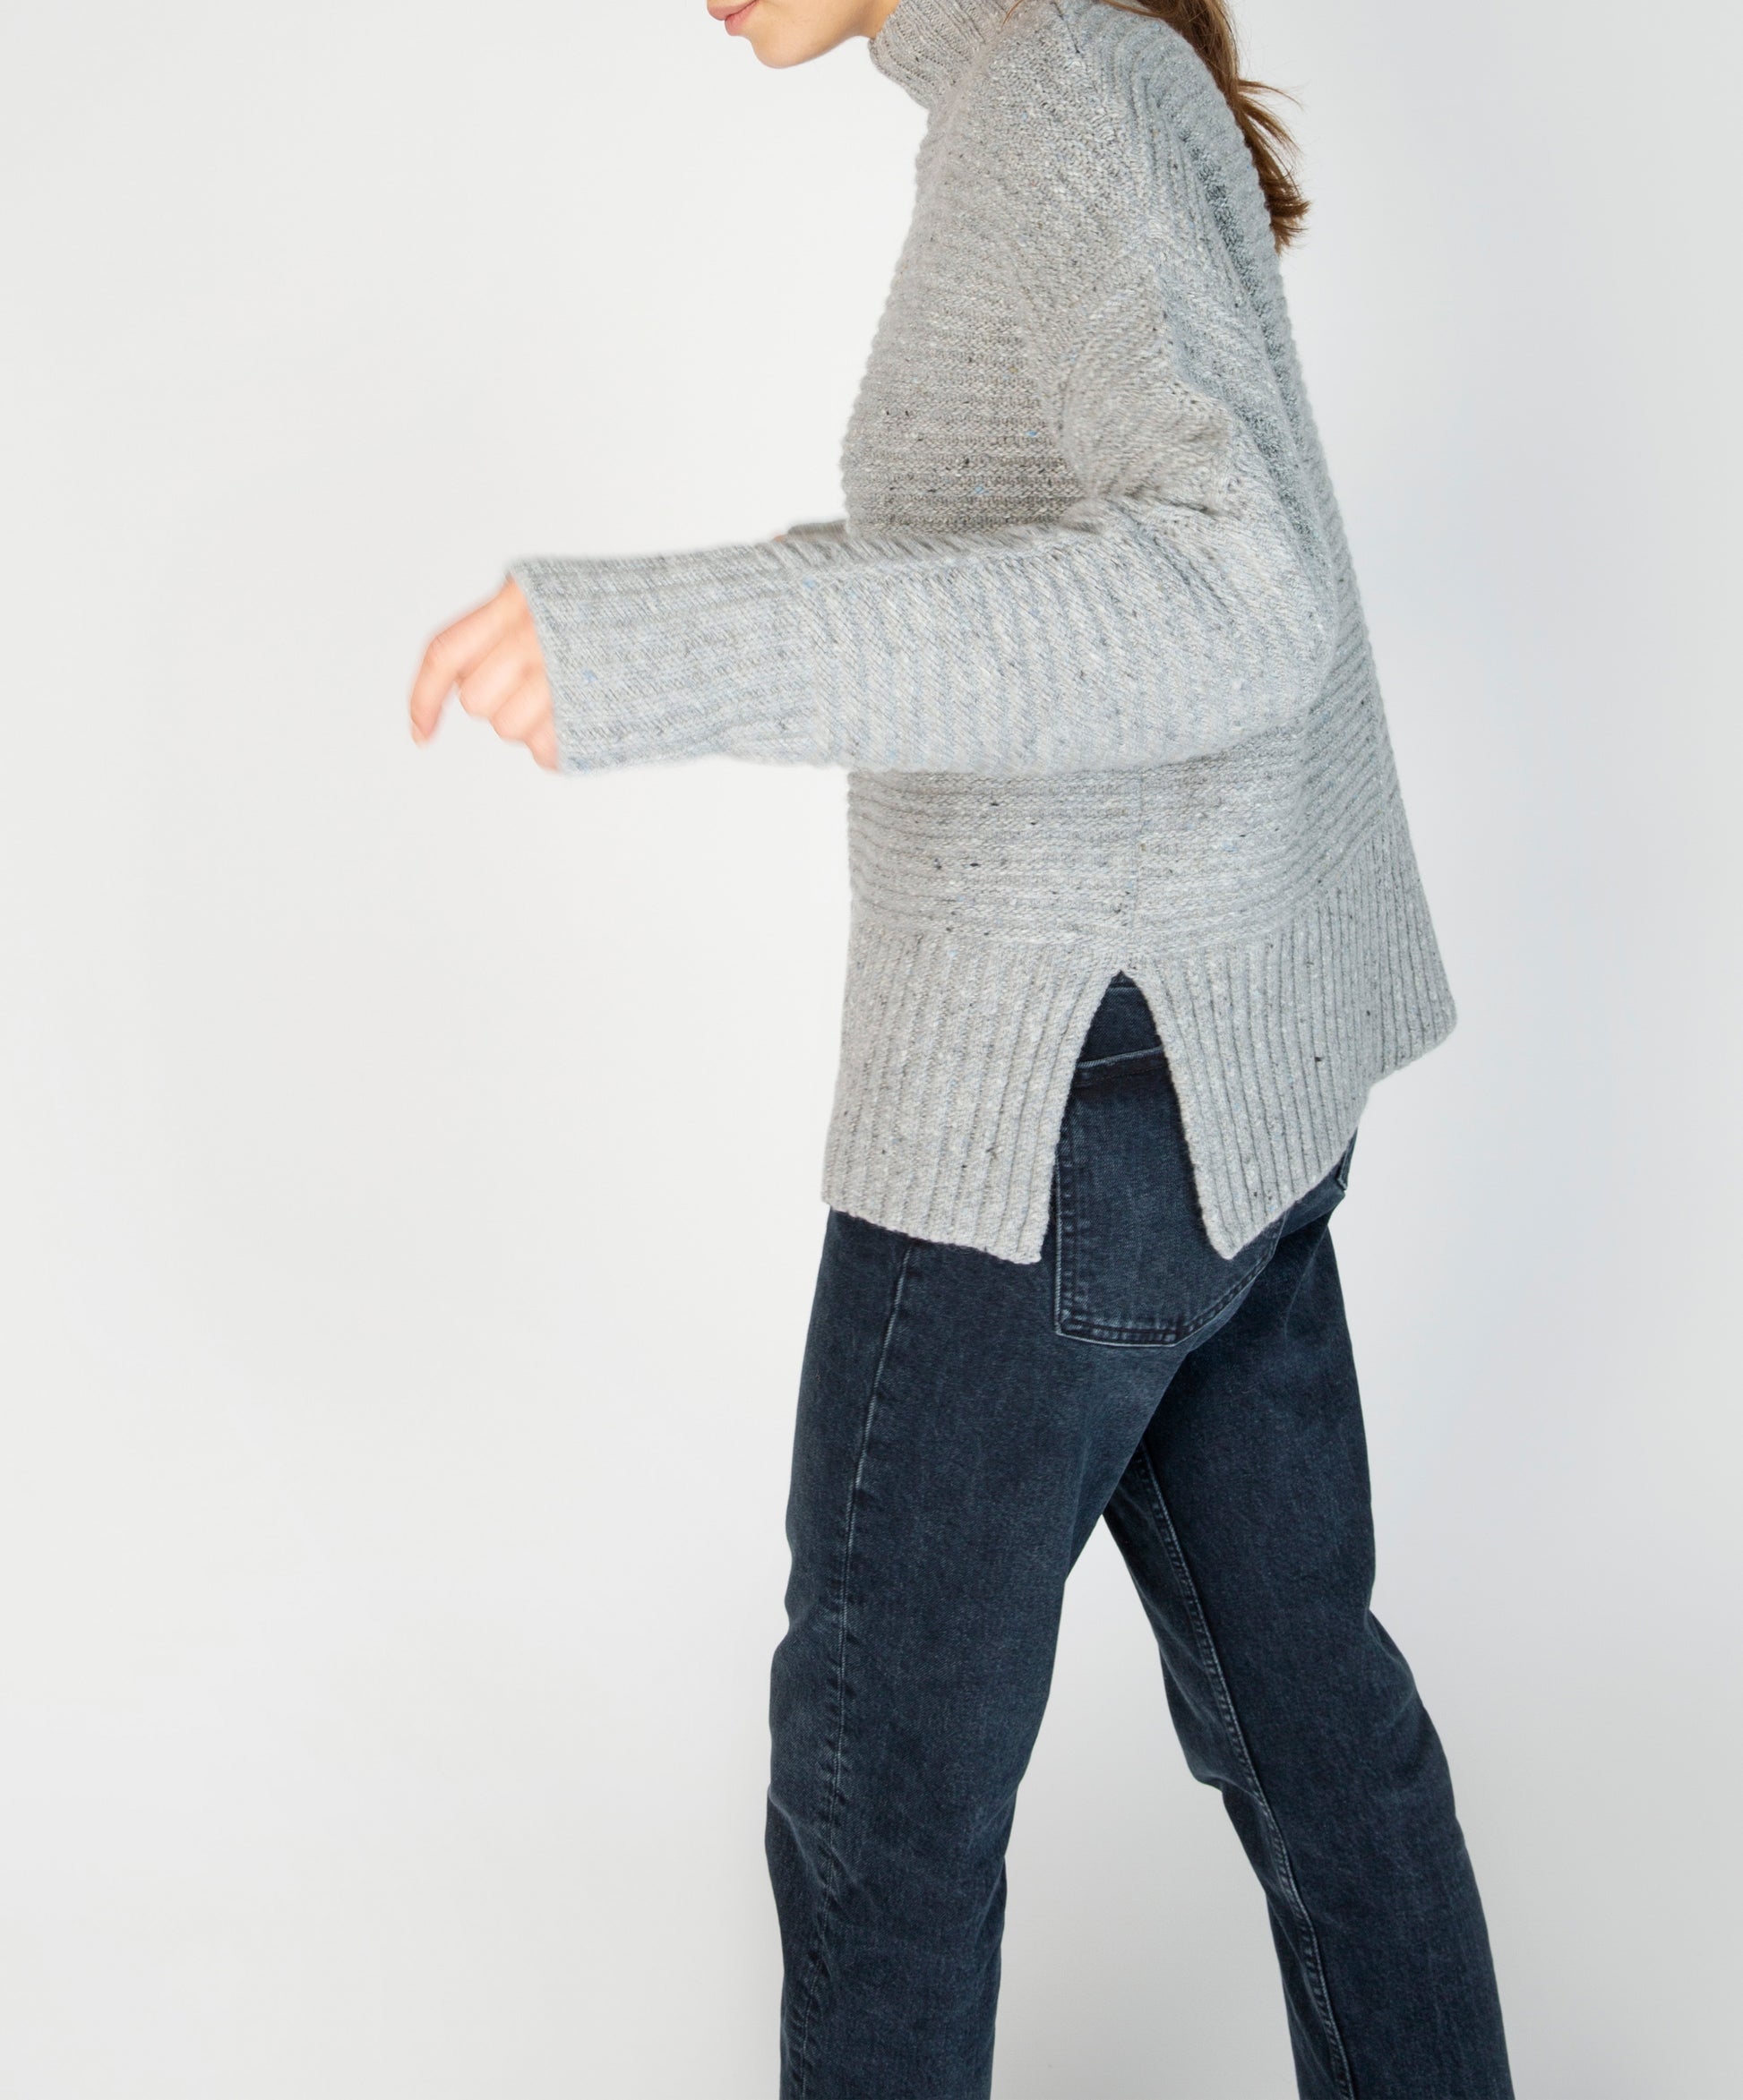 IrelandsEye Knitwear ‘Iris’ Contrast Panel Funnel Neck Sweater Pearl Grey